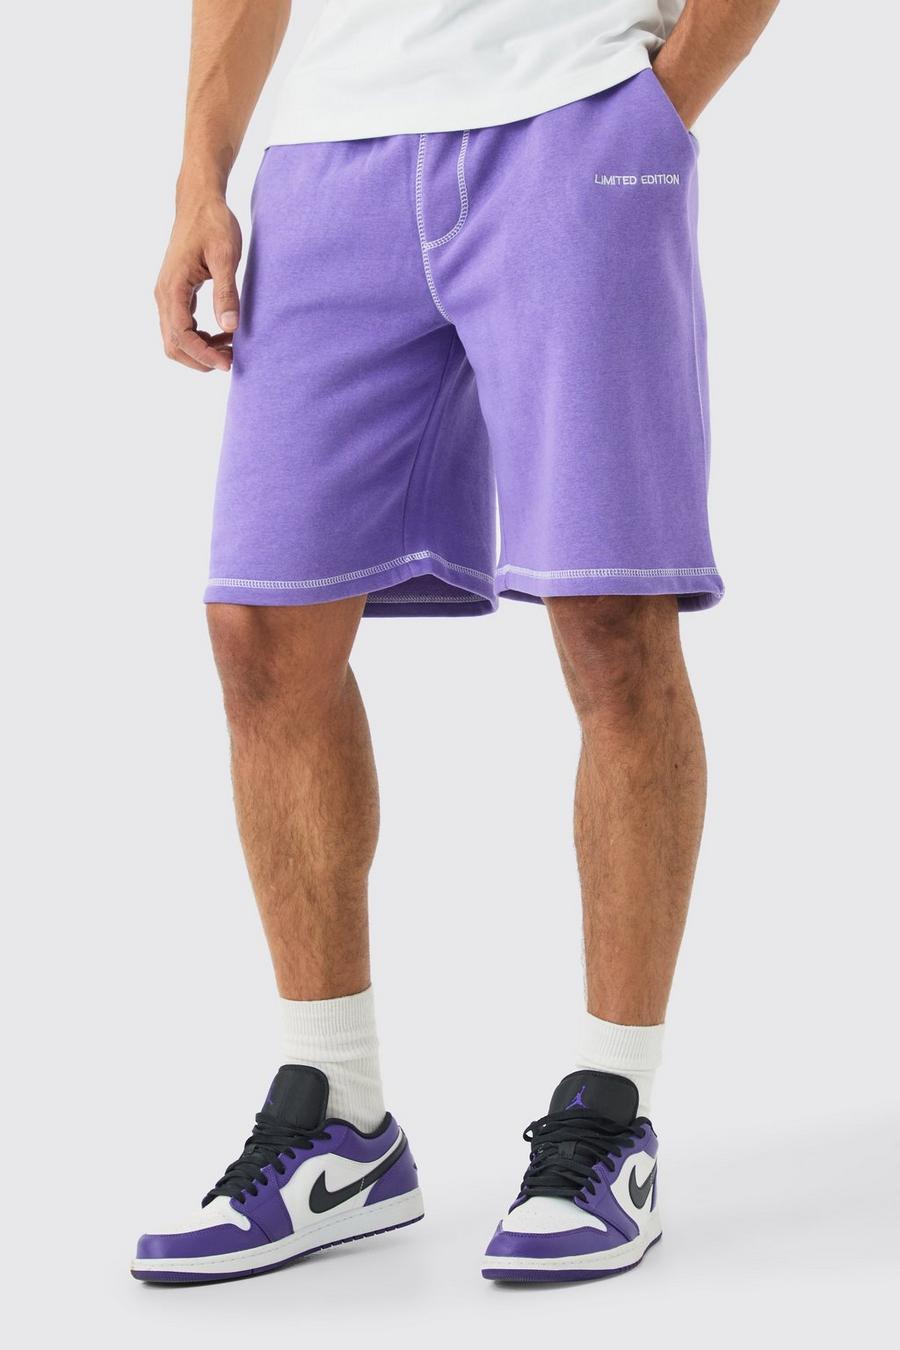 Pantaloncini oversize Limited Edition con cuciture a contrasto, Purple